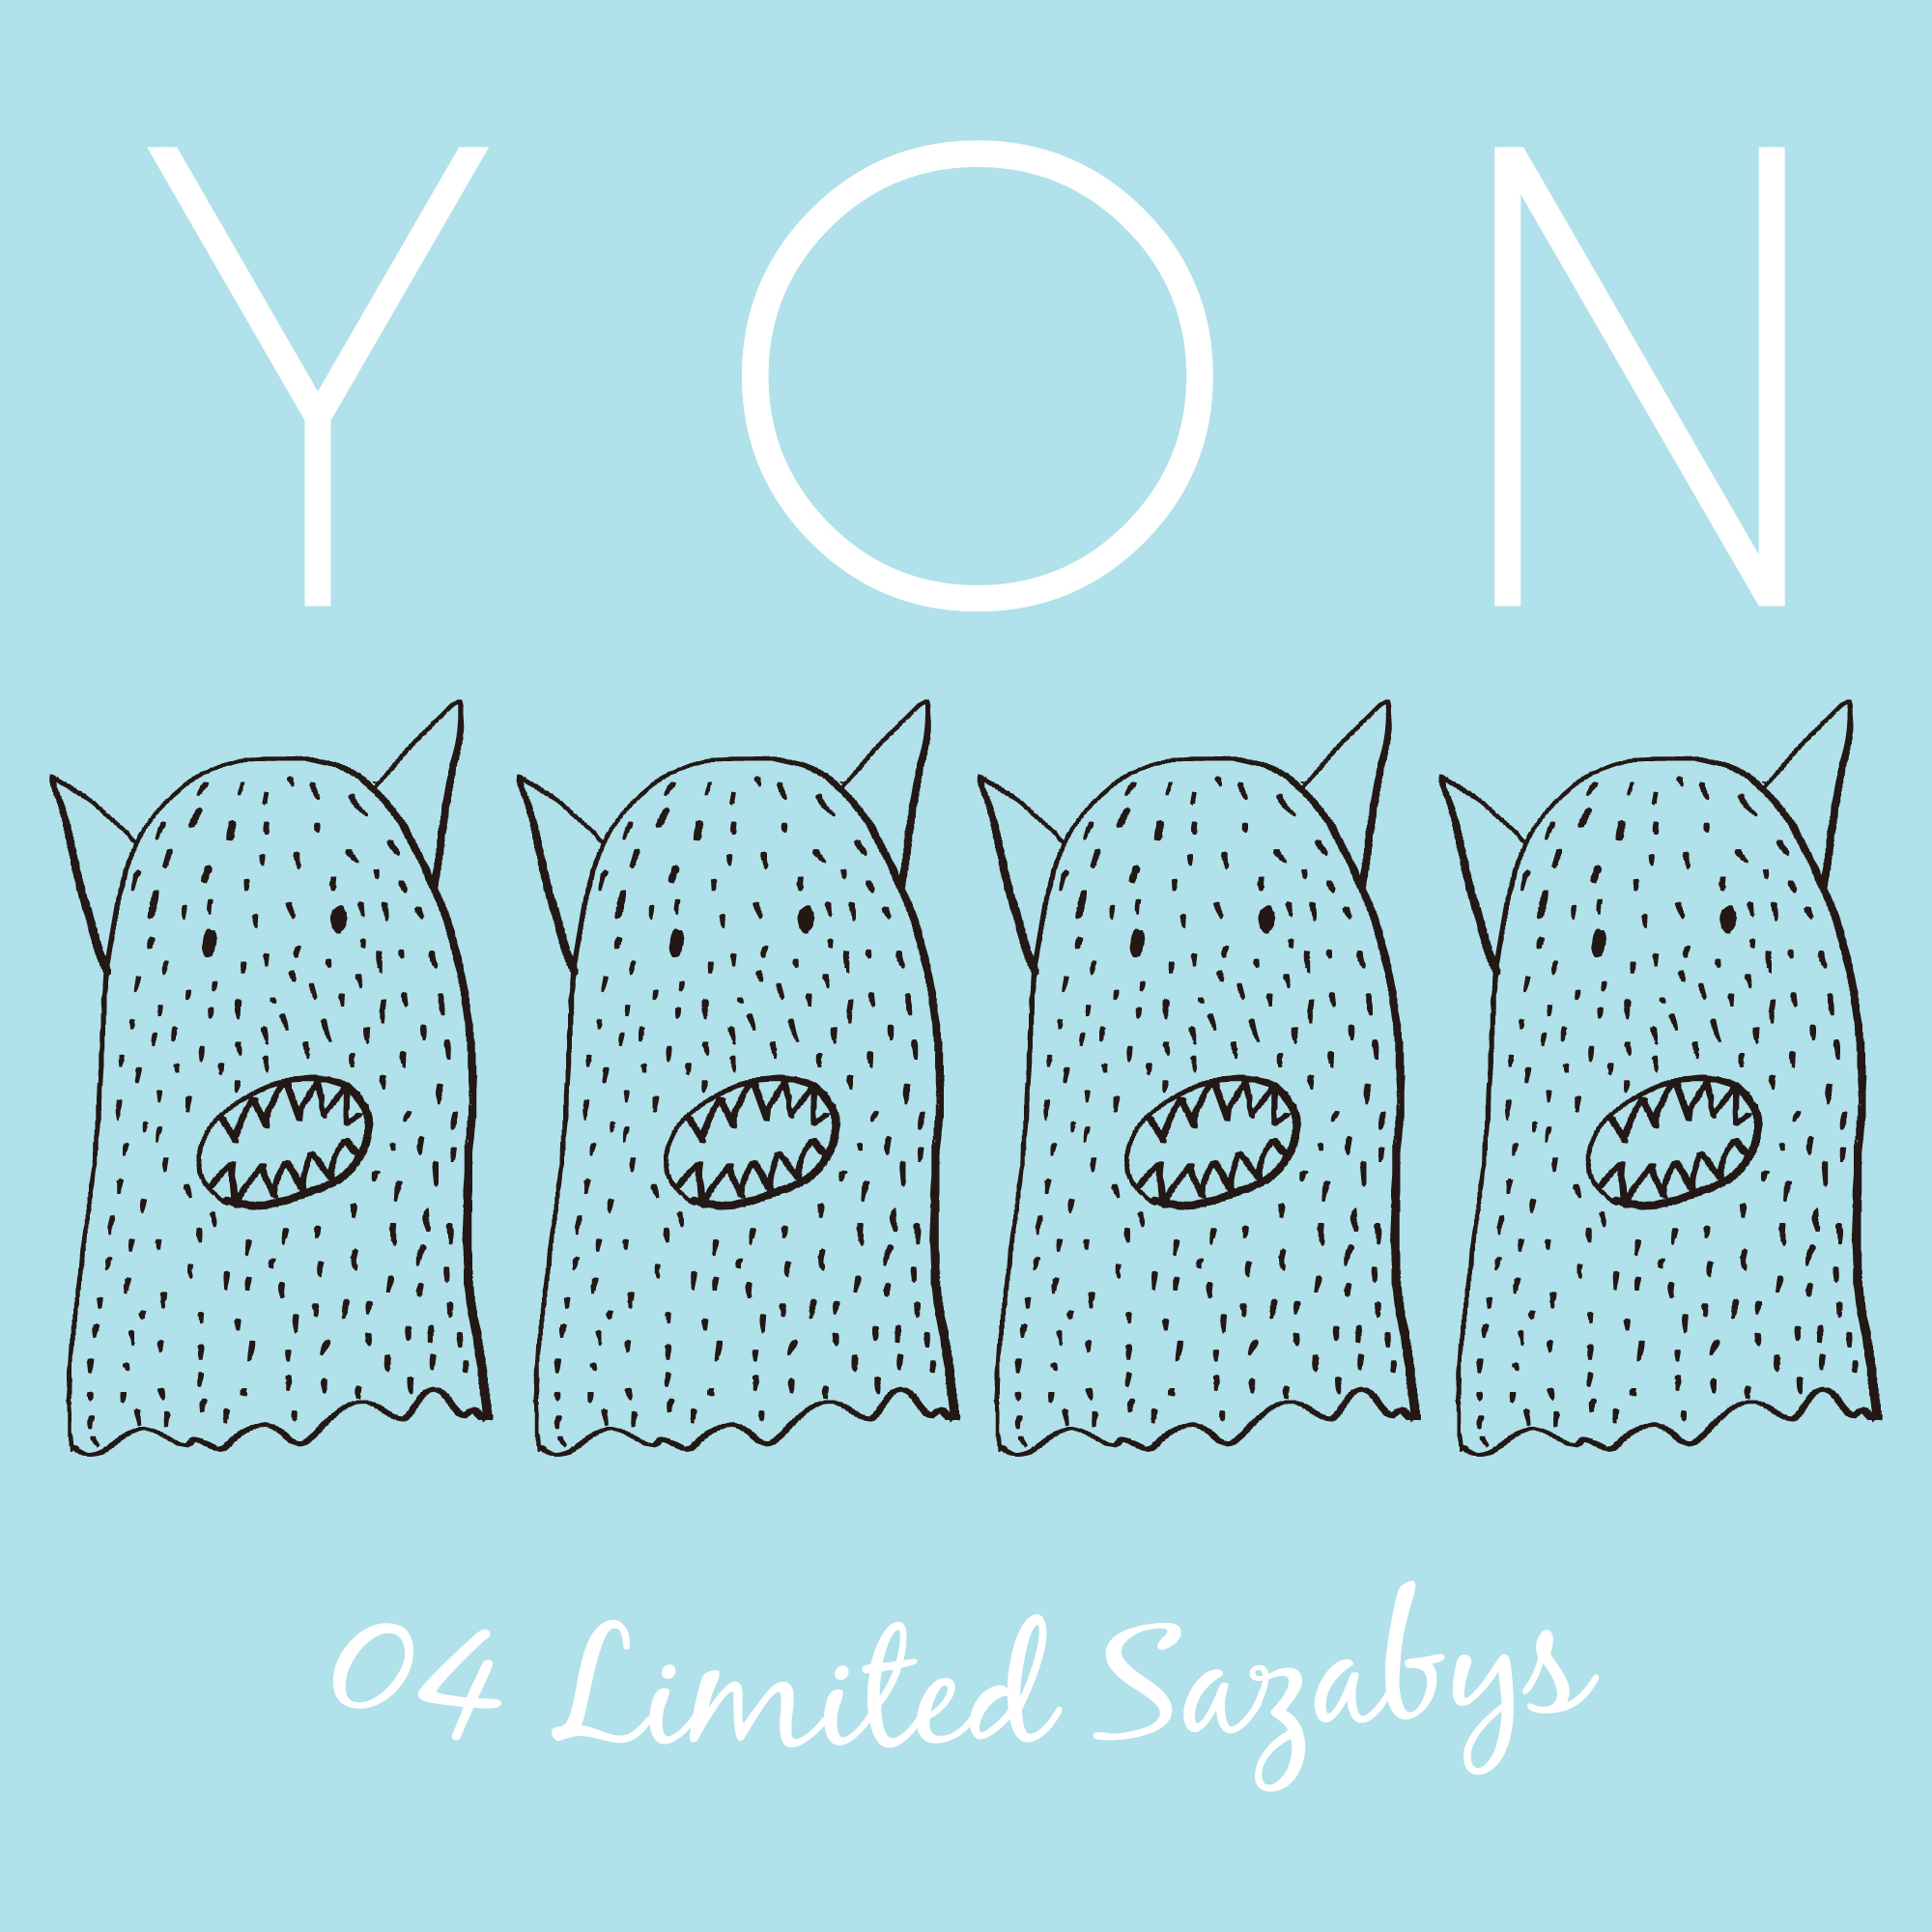 04 Limited Sazabys『YON』初回限定盤